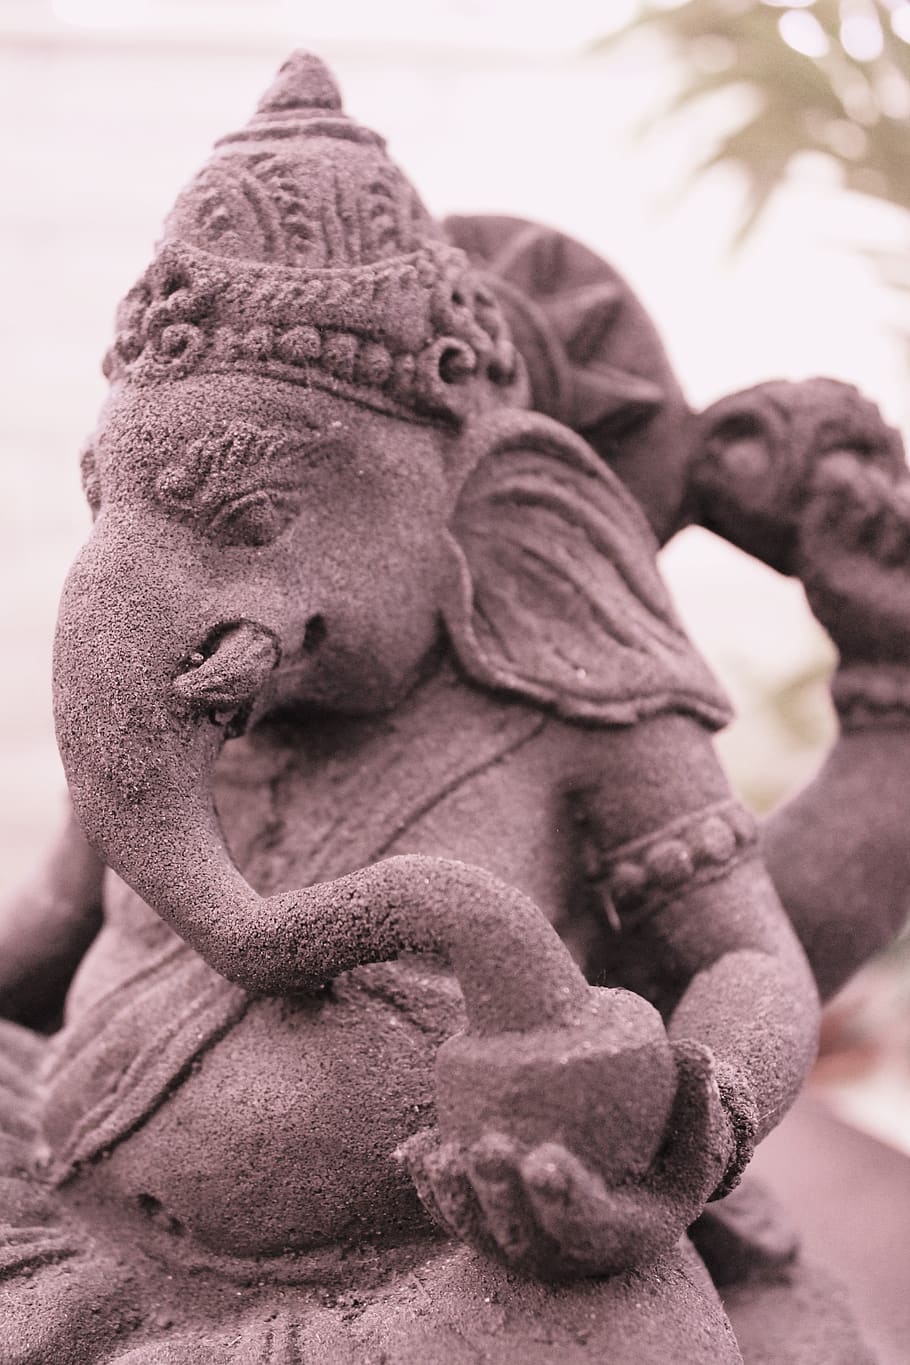 ganesh, sépia, mantra, deva, divindade, hinduísmo, crença, abençoar, cultural, elefante